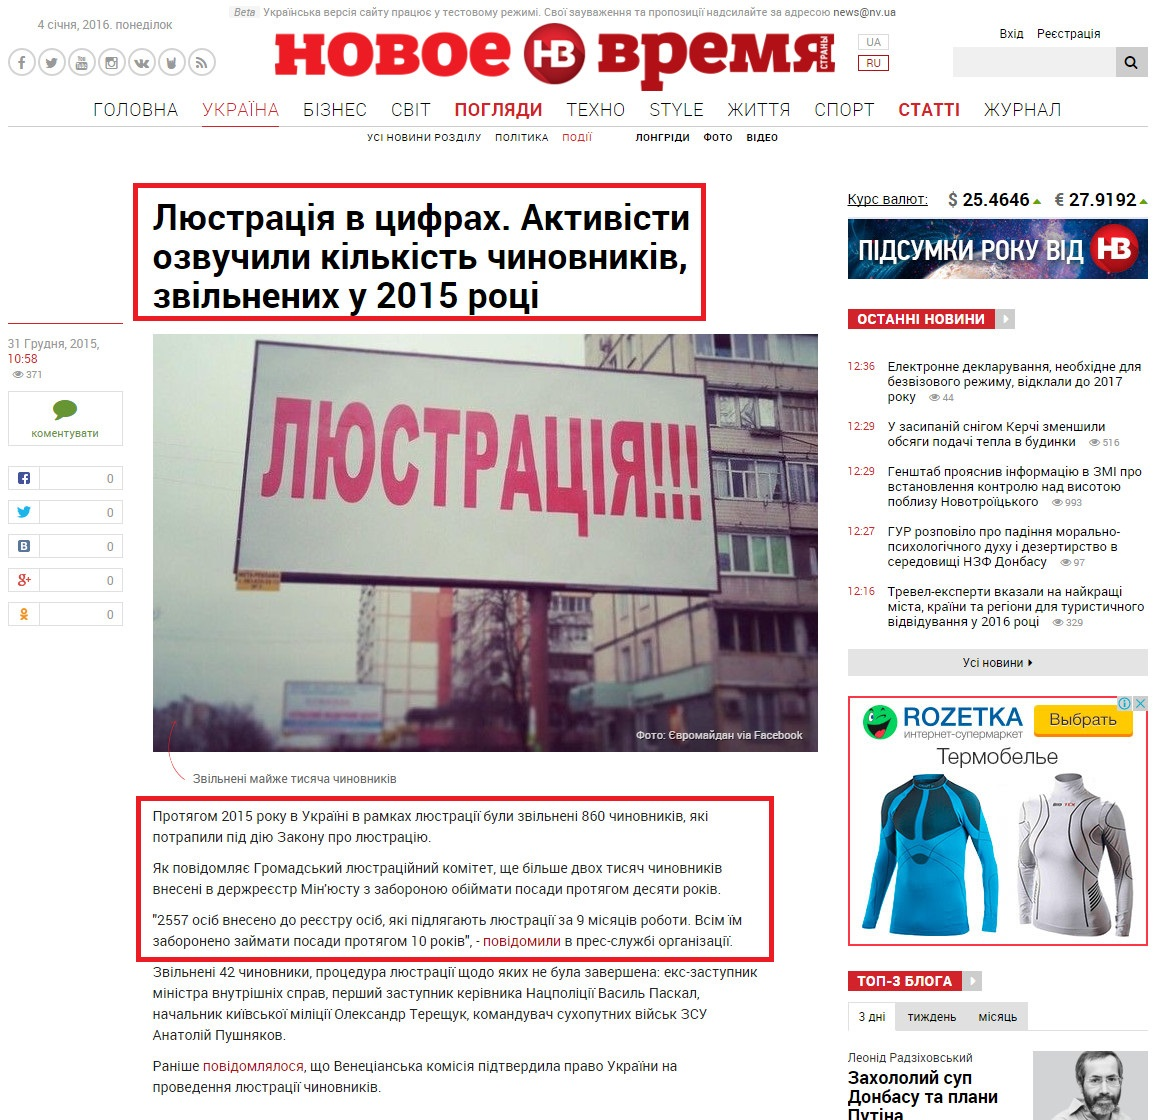 http://www.pravda.com.ua/news/2015/12/17/7092795/